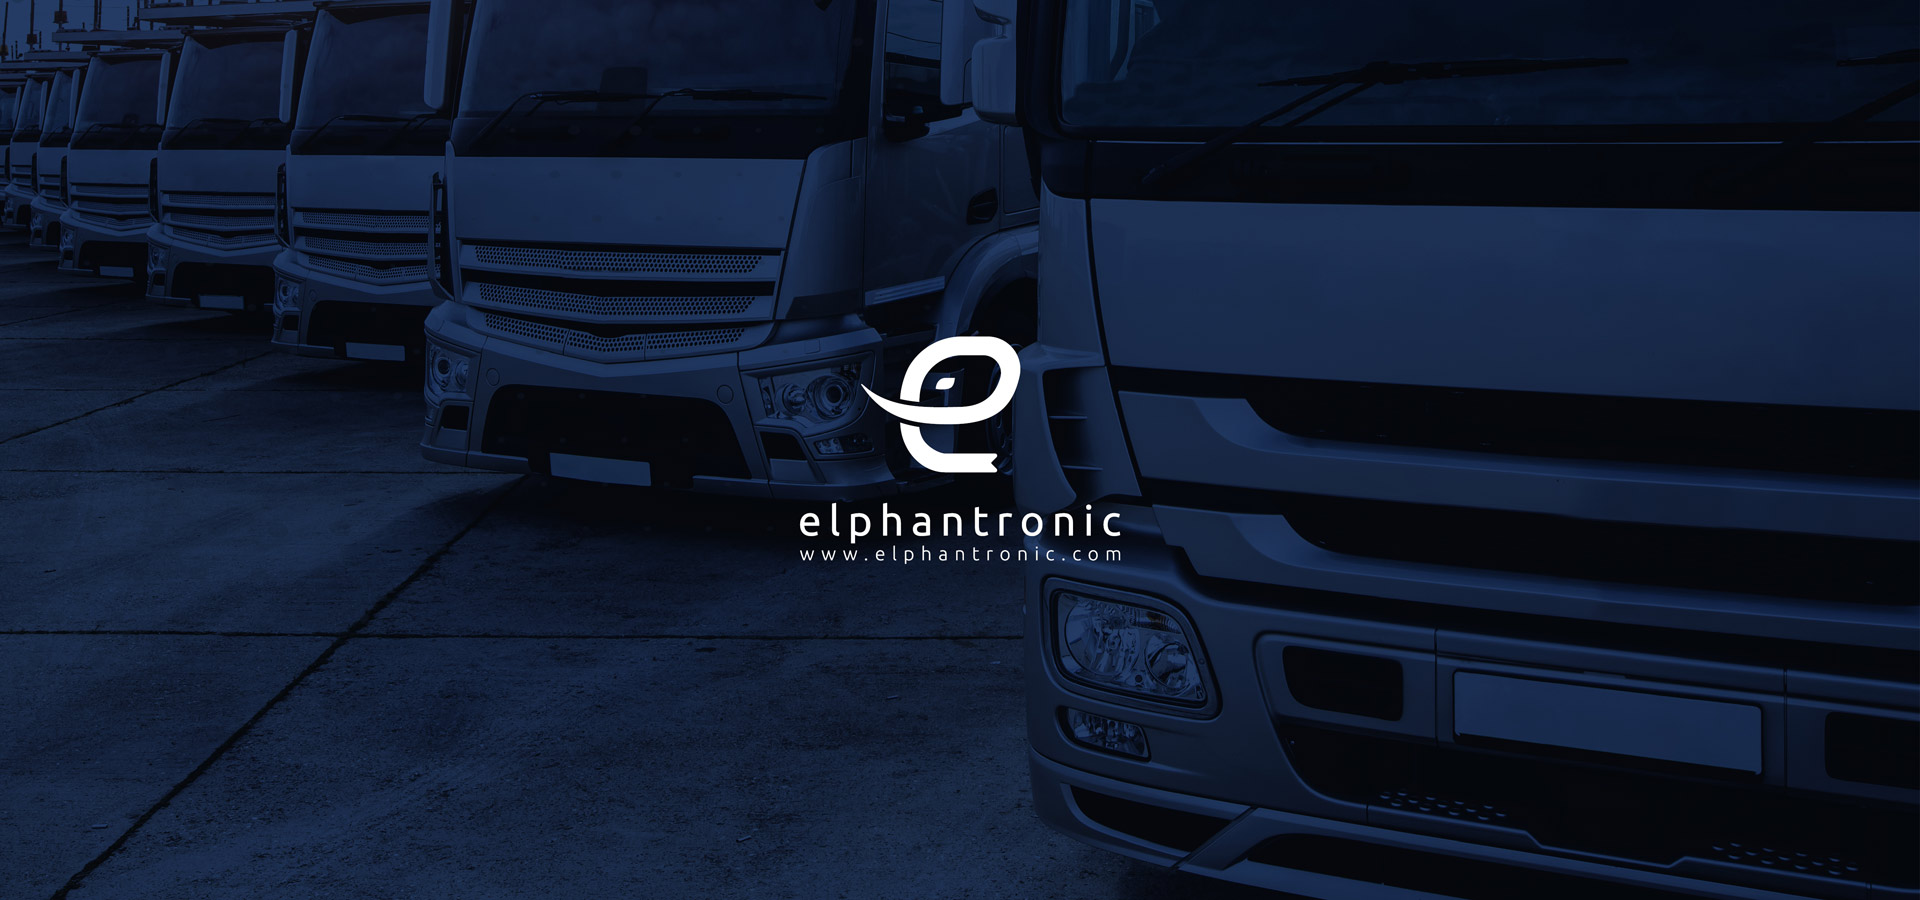 elphantronic یکی از مشتریان ما برای برندسازی حمل و نقل بود